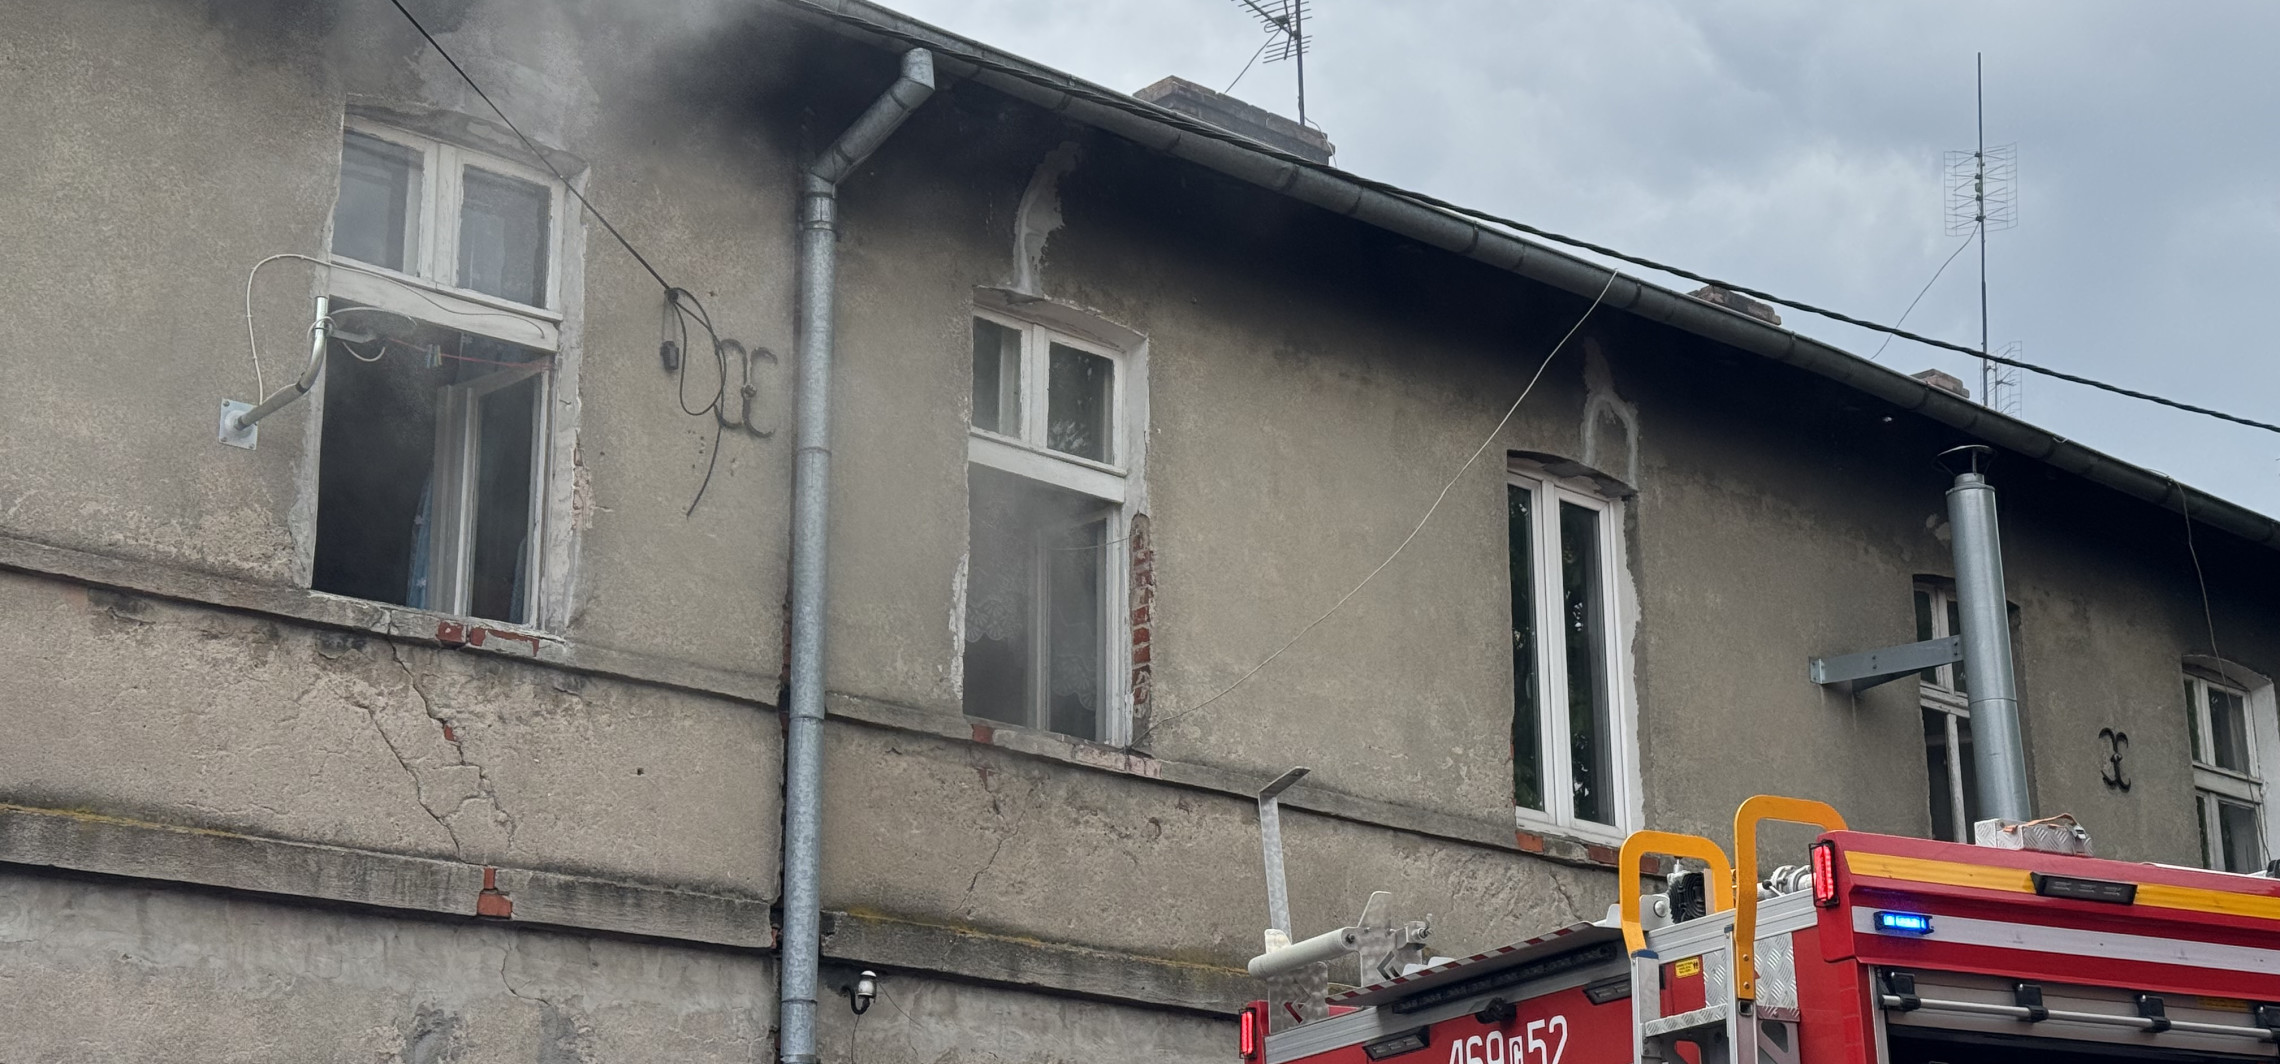 Gniewkowo - Jedna osoba zginęła w pożarze mieszkania 